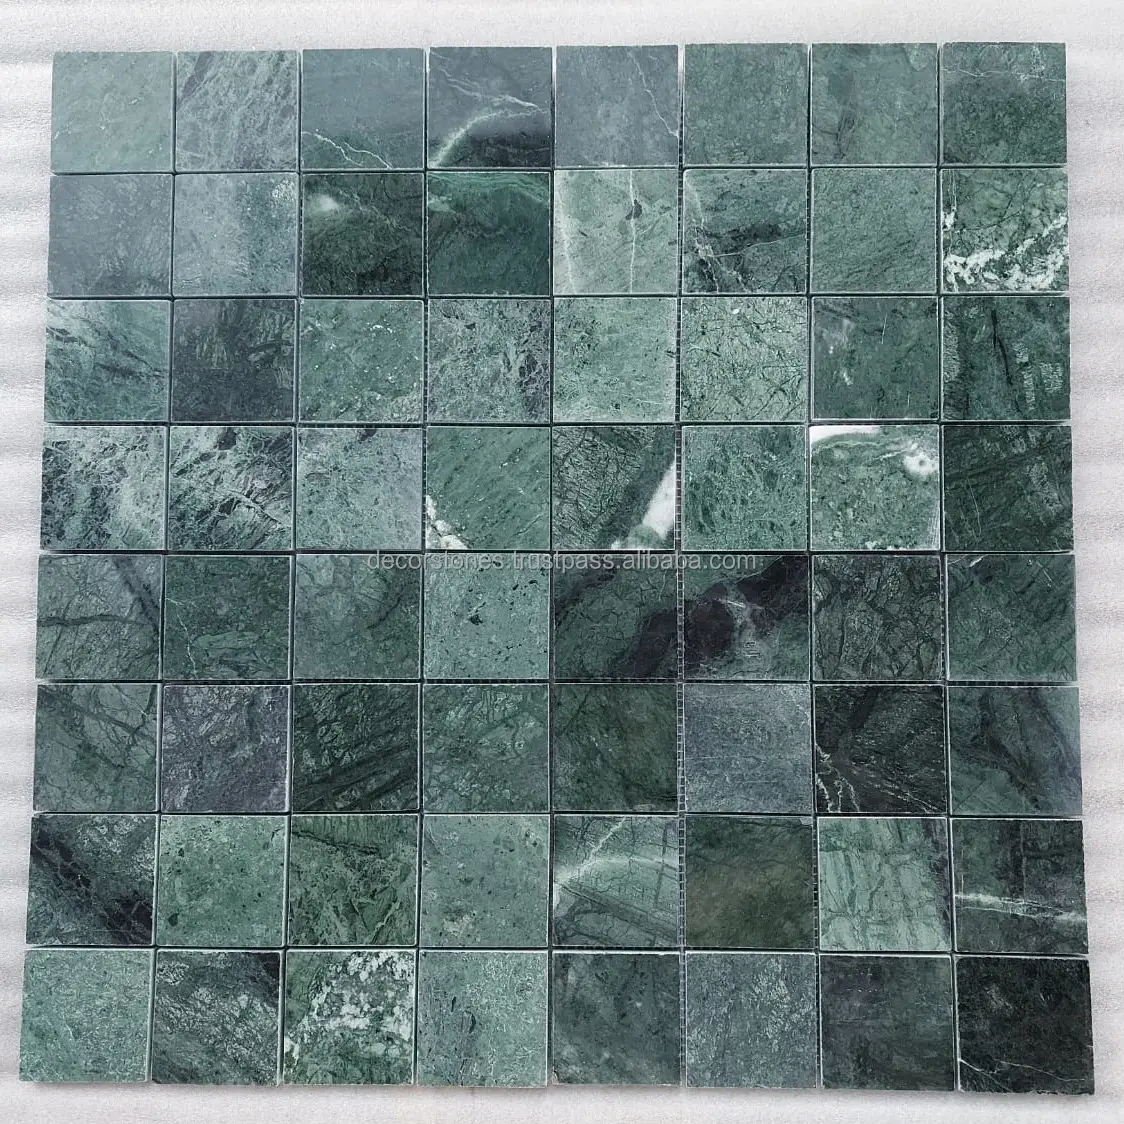 Carrelage en mosaïque de marbre vert indien, pour cuisine, dosseret de salle de bain, revêtement mural, sol de piscine